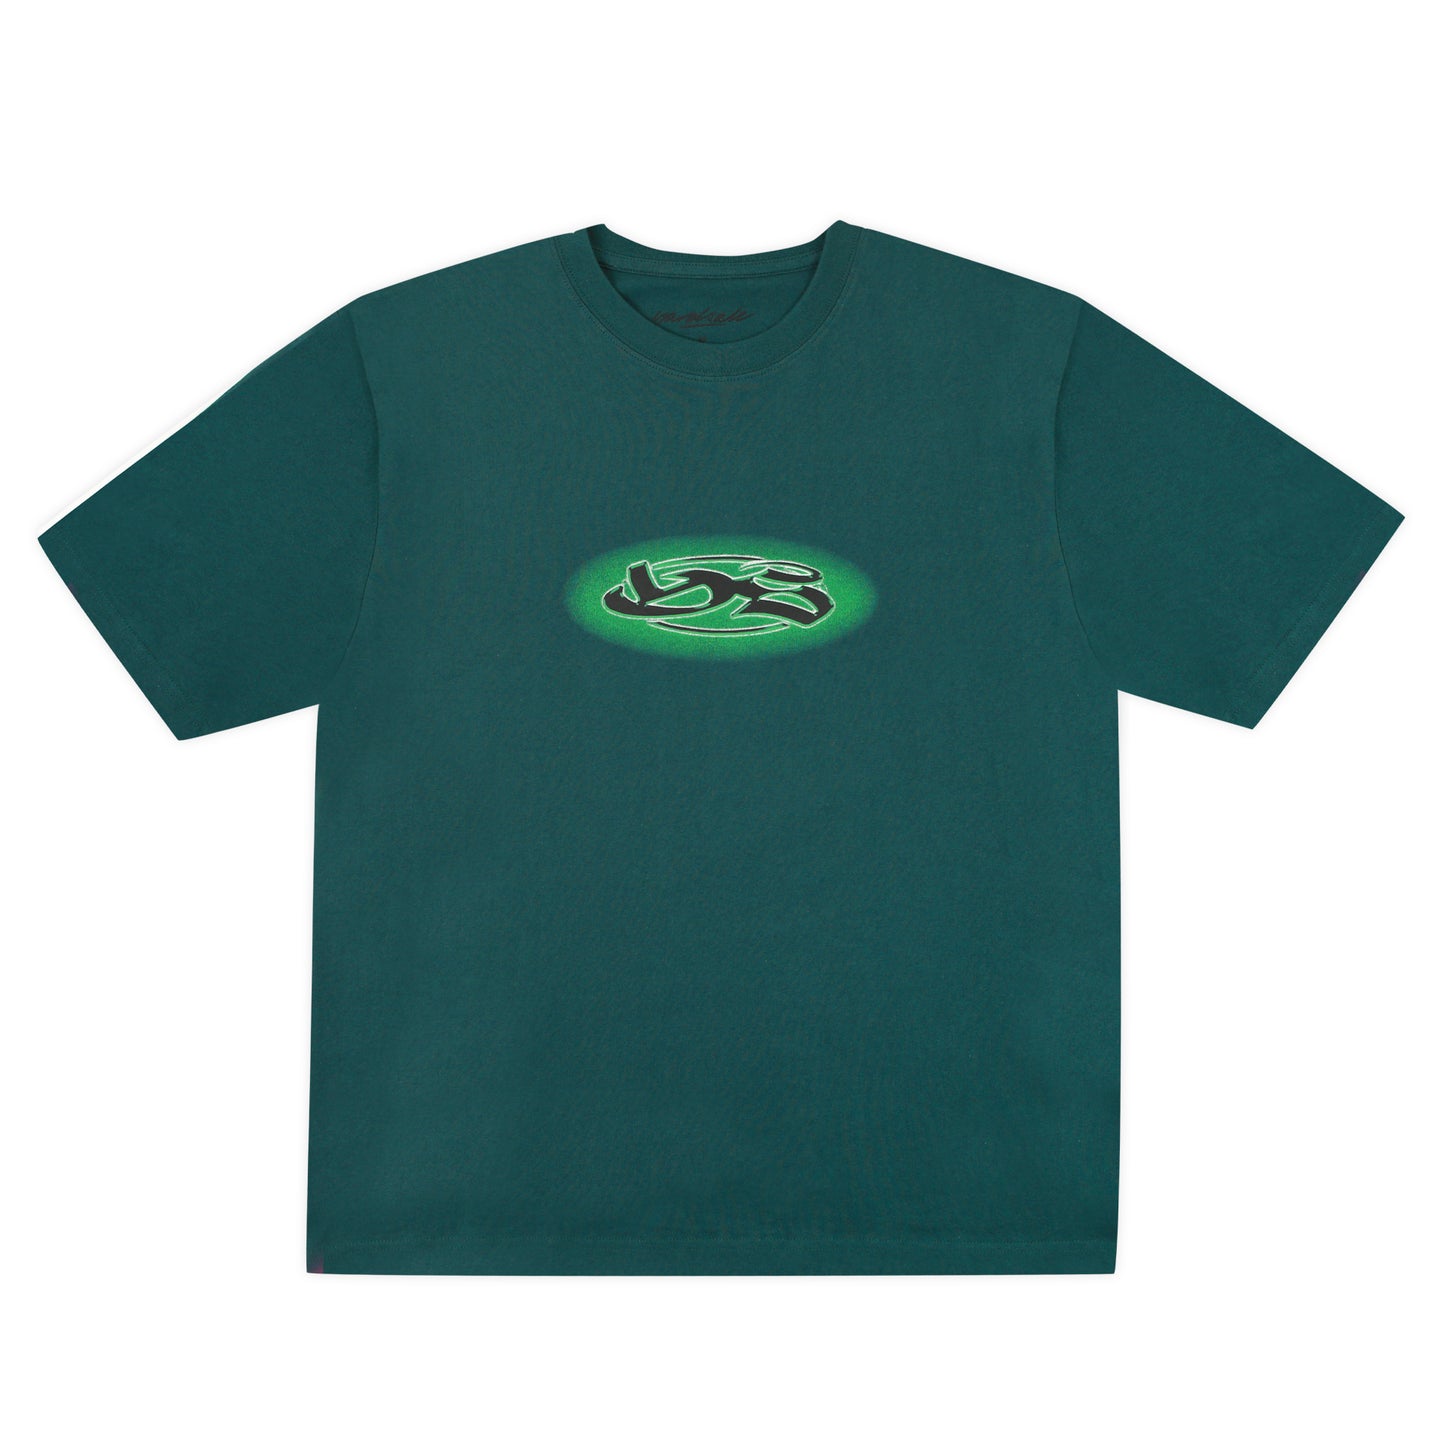 YS Fade T-Shirt (Green)